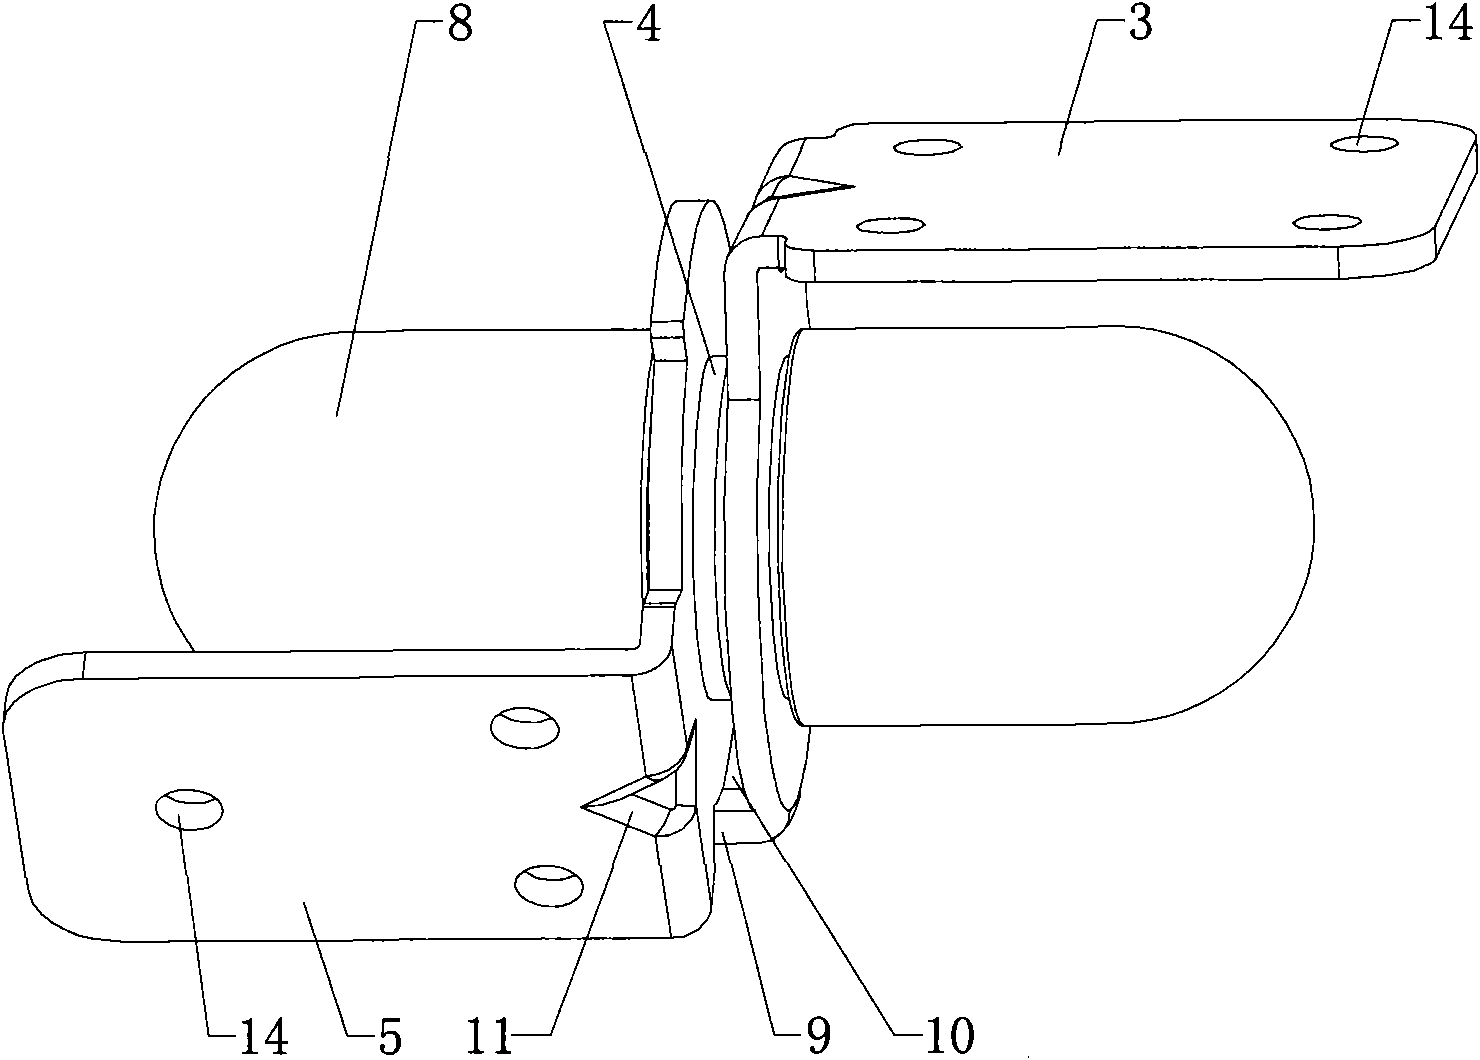 Elastic-friction rotational-positioning hinge